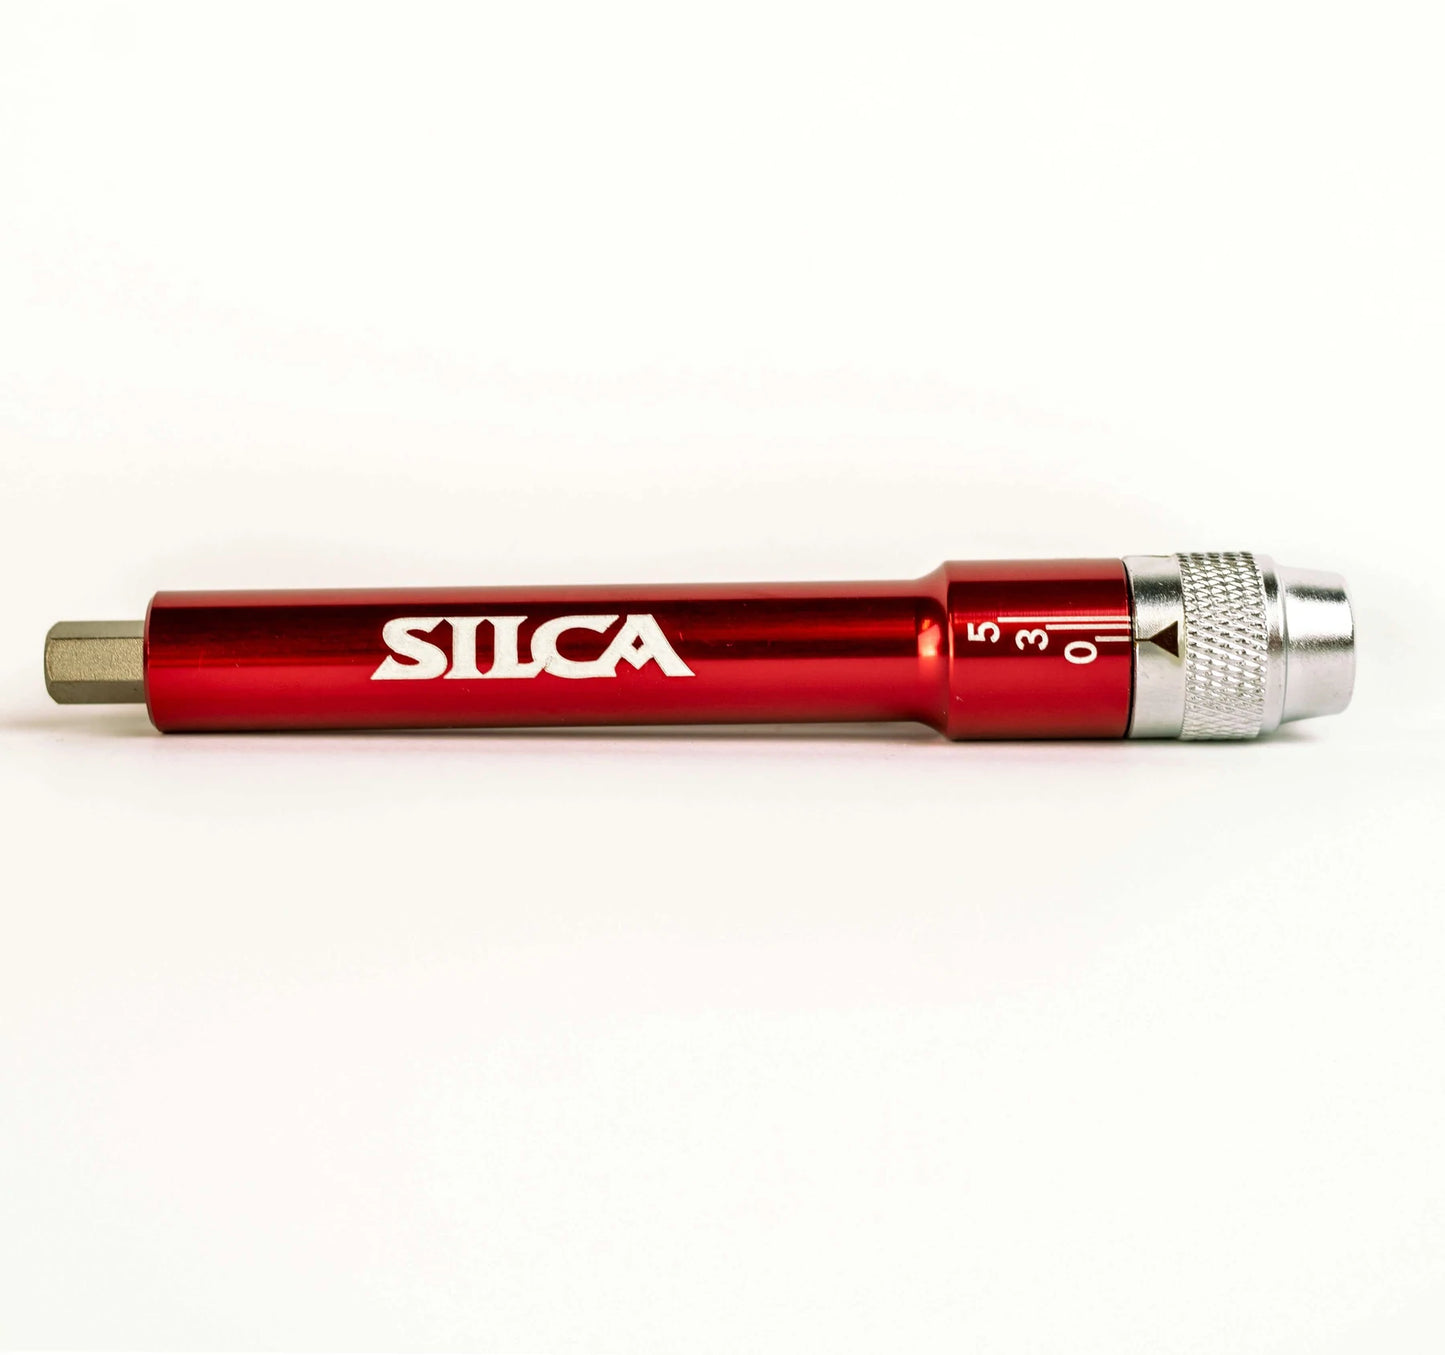 Silca T-Ratchet Kit Ti-Torque on a white background